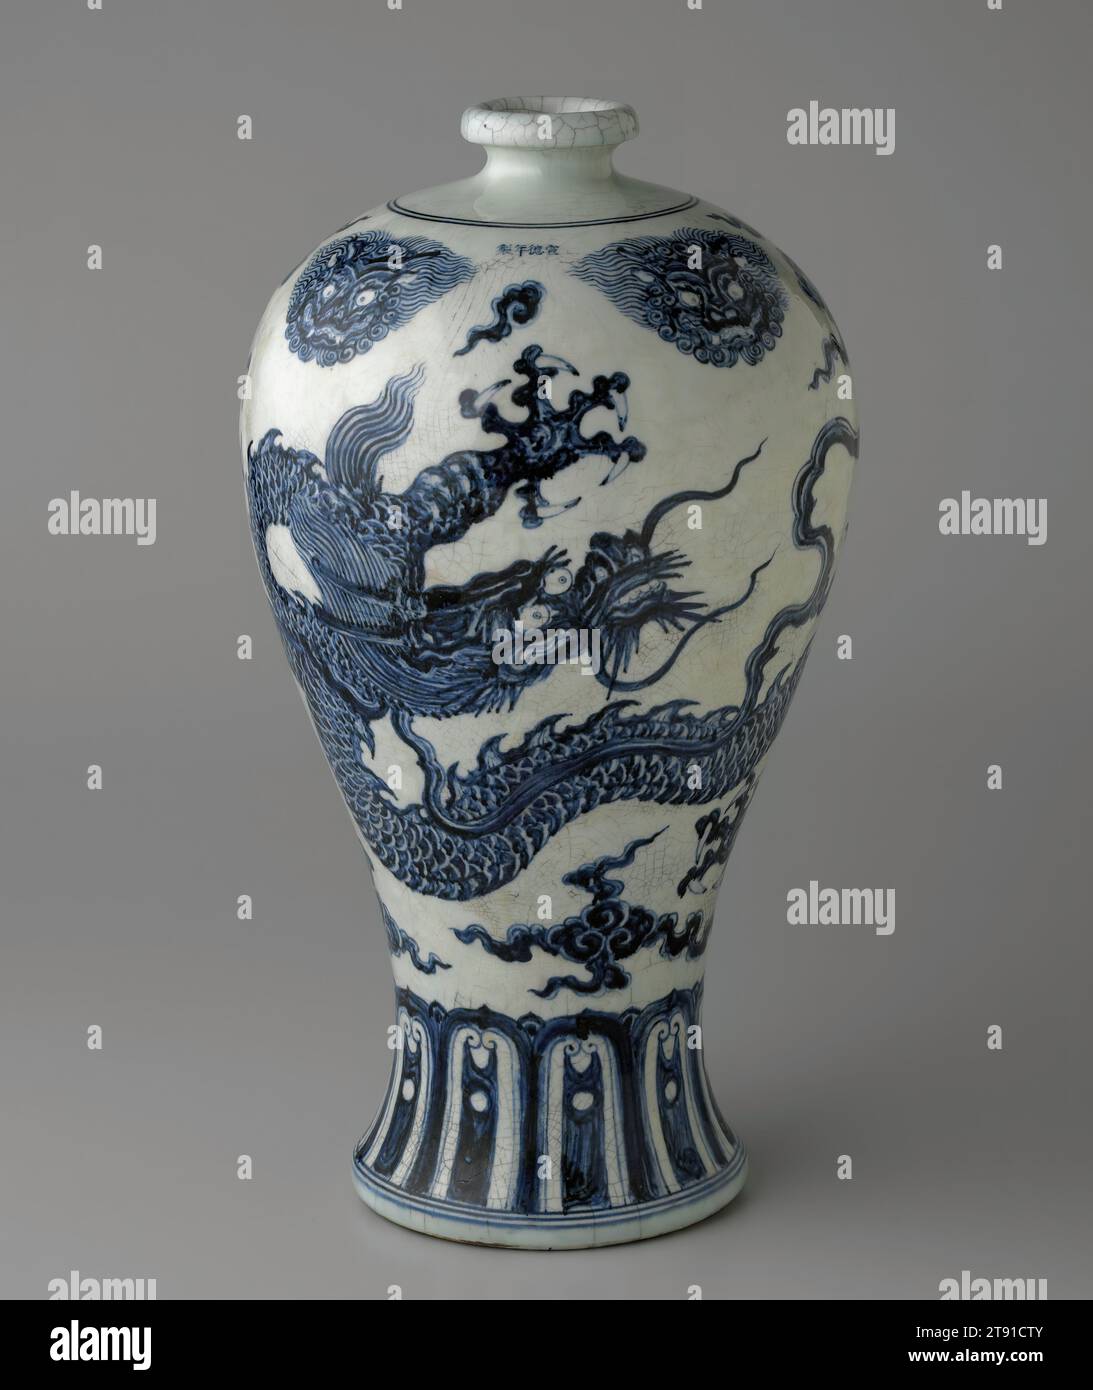 Vase Meiping décoré d'un dragon bleu sous-glacé, 1426-1435, 21 1/2 x 11 7/16 po. (54,6 x 29,1 cm), articles Jingdezhen ; porcelaine au décor bleu cobalt sous un glaçage clair, Chine, 15e siècle, des récipients comme ce vase meiping d'époque Xuande illustrent la technique décorative des articles bleus et blancs à son maximum accompli. Il combine la liberté et l'énergie d'une forme d'art nouvellement émergente avec la sophistication du concept et la maîtrise de la technique qui vient avec la maturité. Il présente un exubérant dragon impérial à cinq griffes comme motif central, qui projette un air de majesté et de puissance Banque D'Images